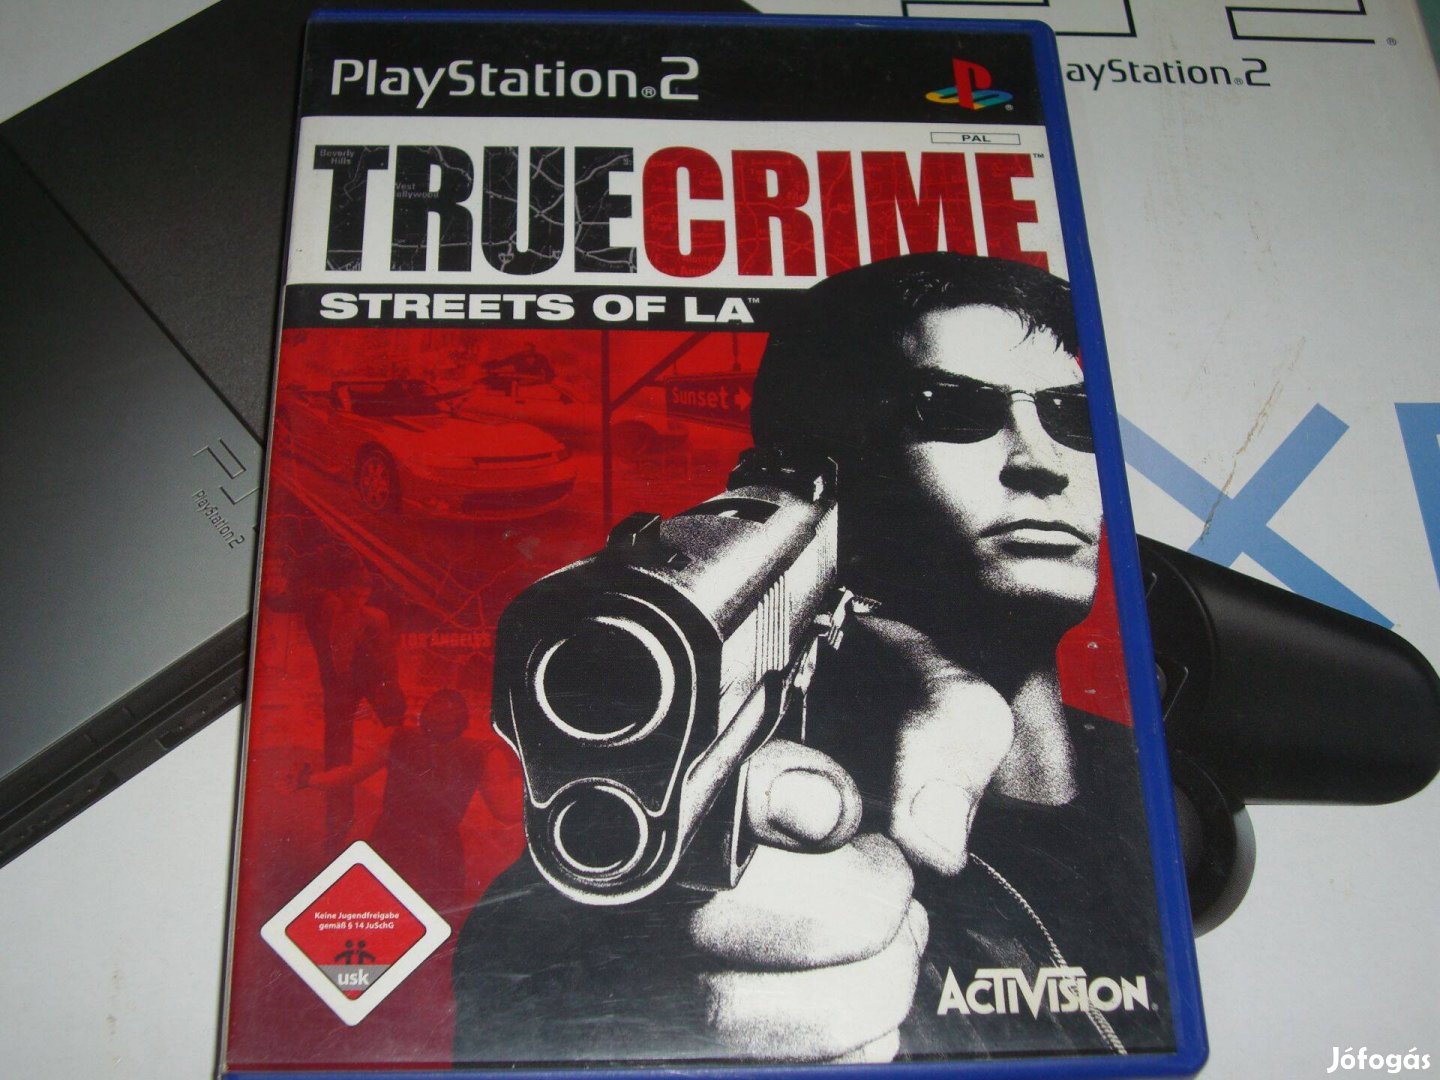 True Crime Streets of La Ps 2-re eredetiben eladó